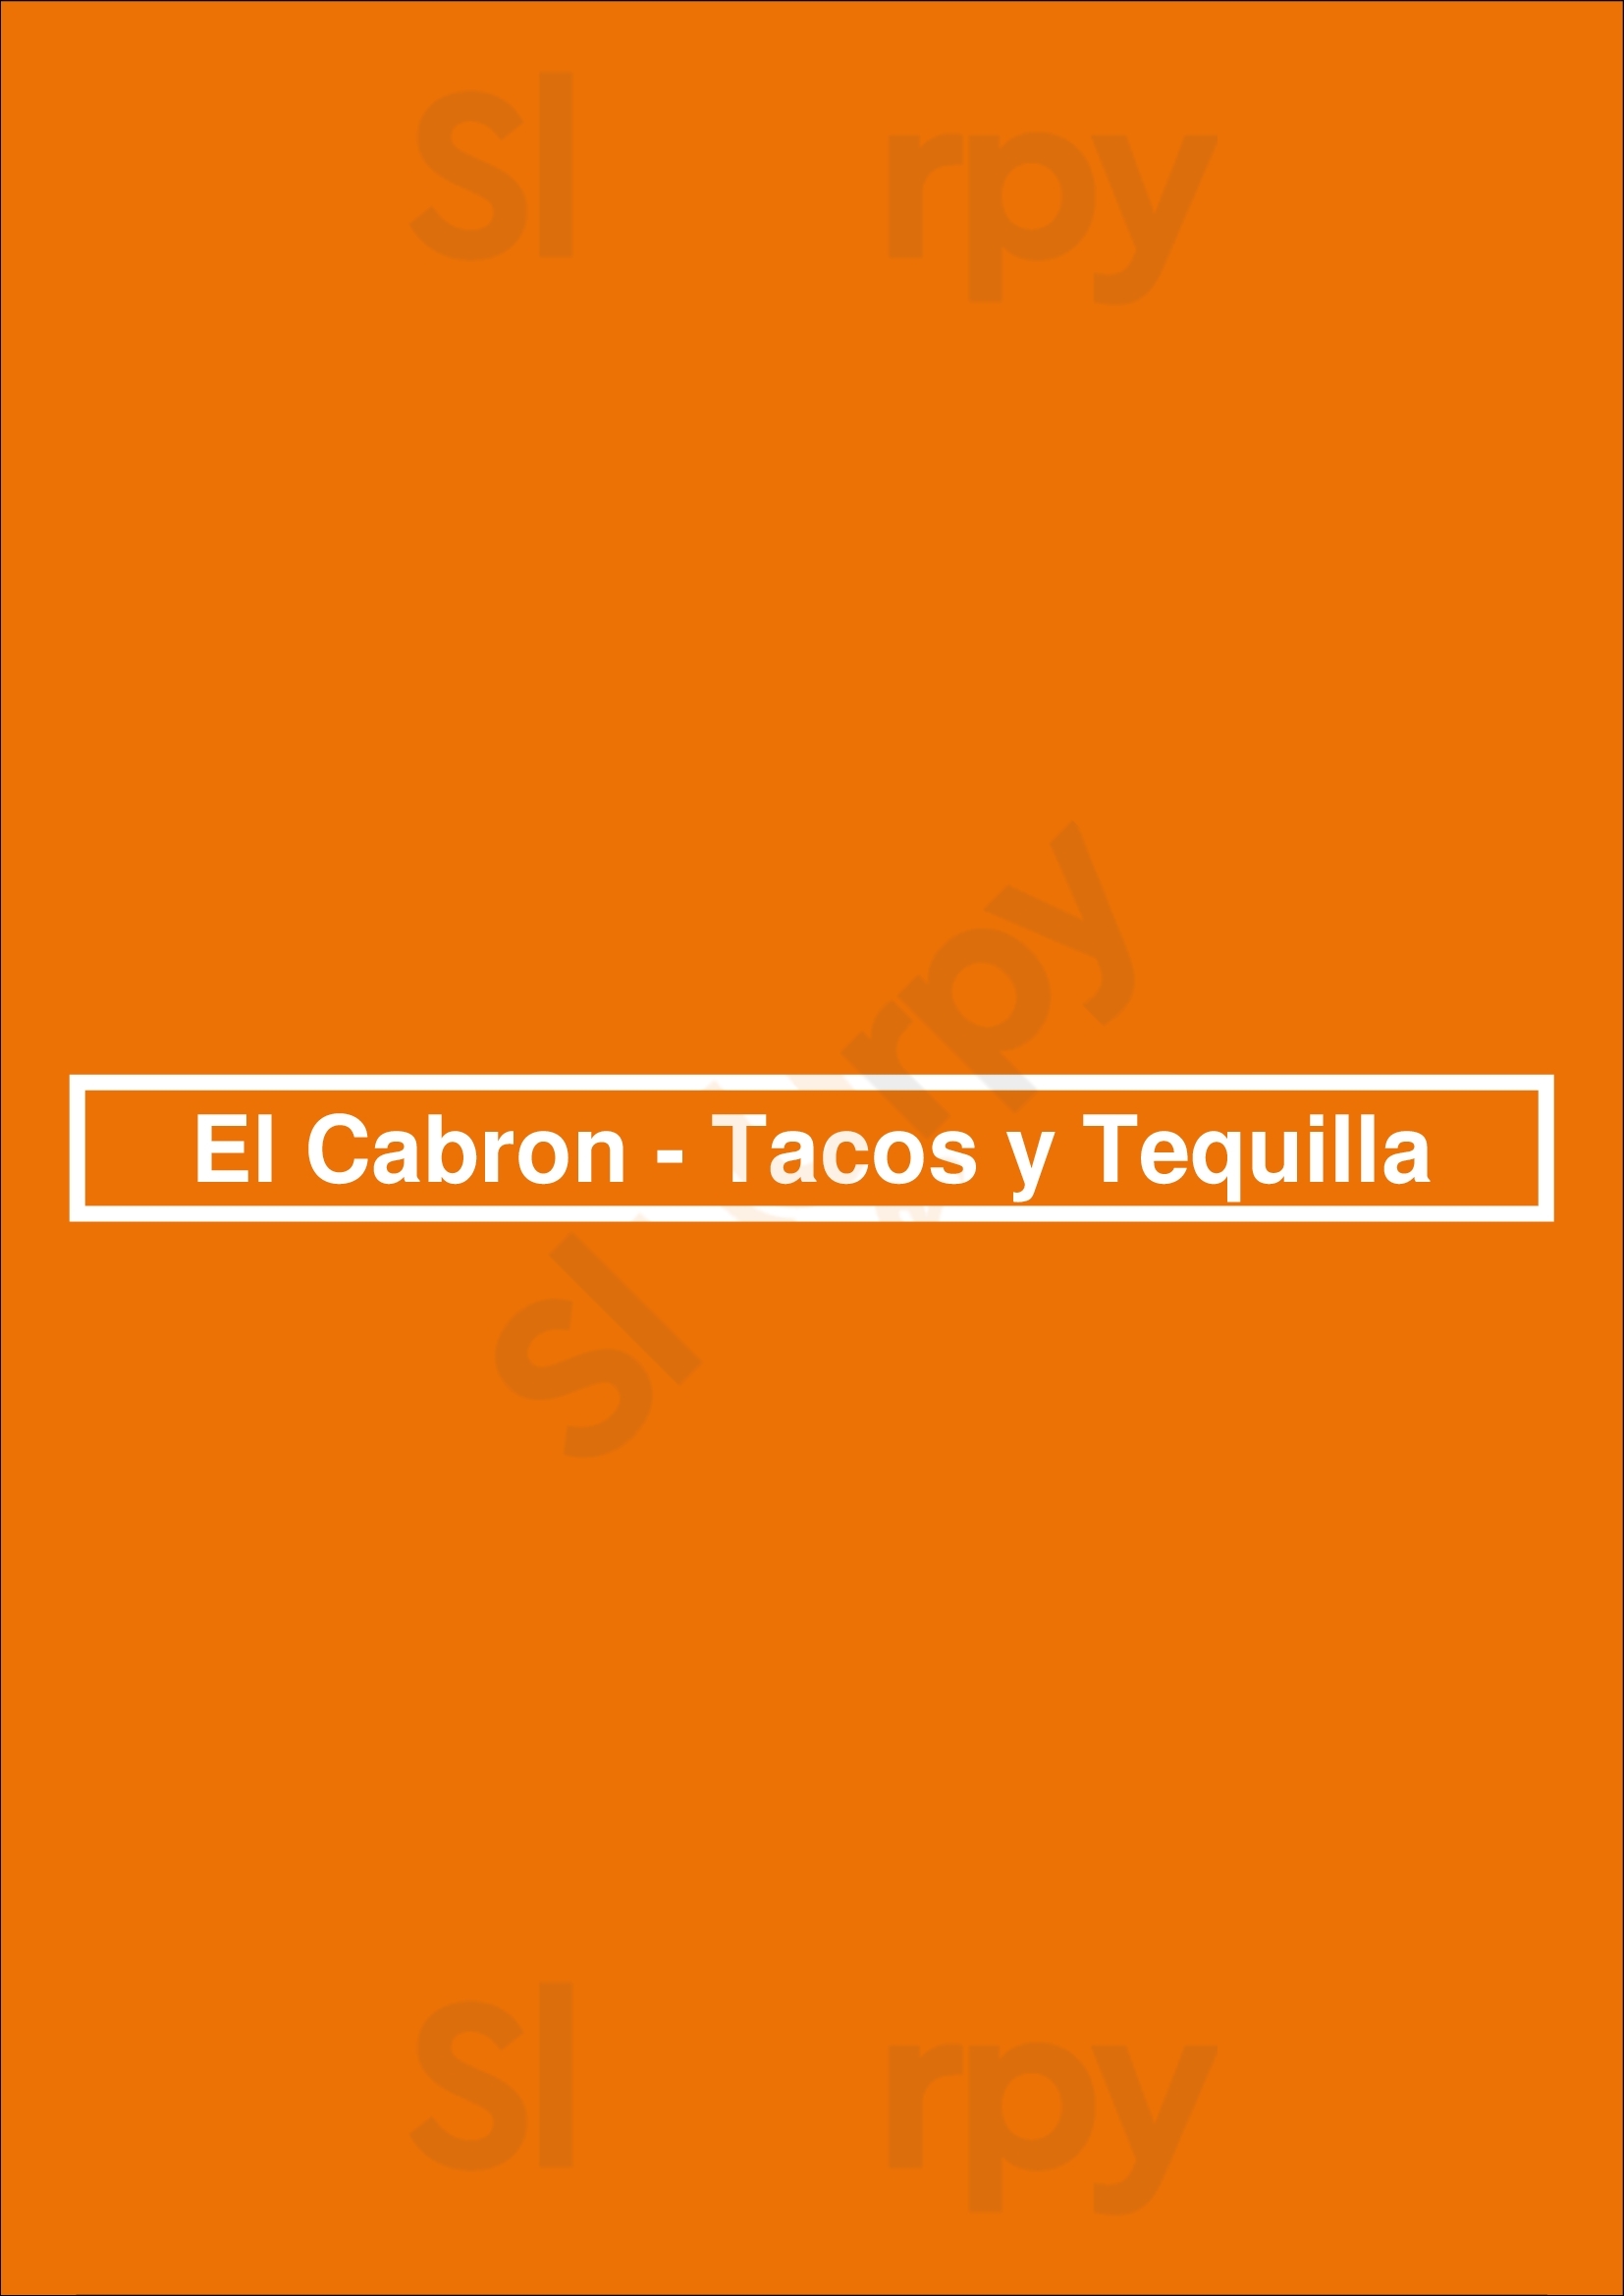 El Cabron - Tacos Y Tequilla Lisboa Menu - 1